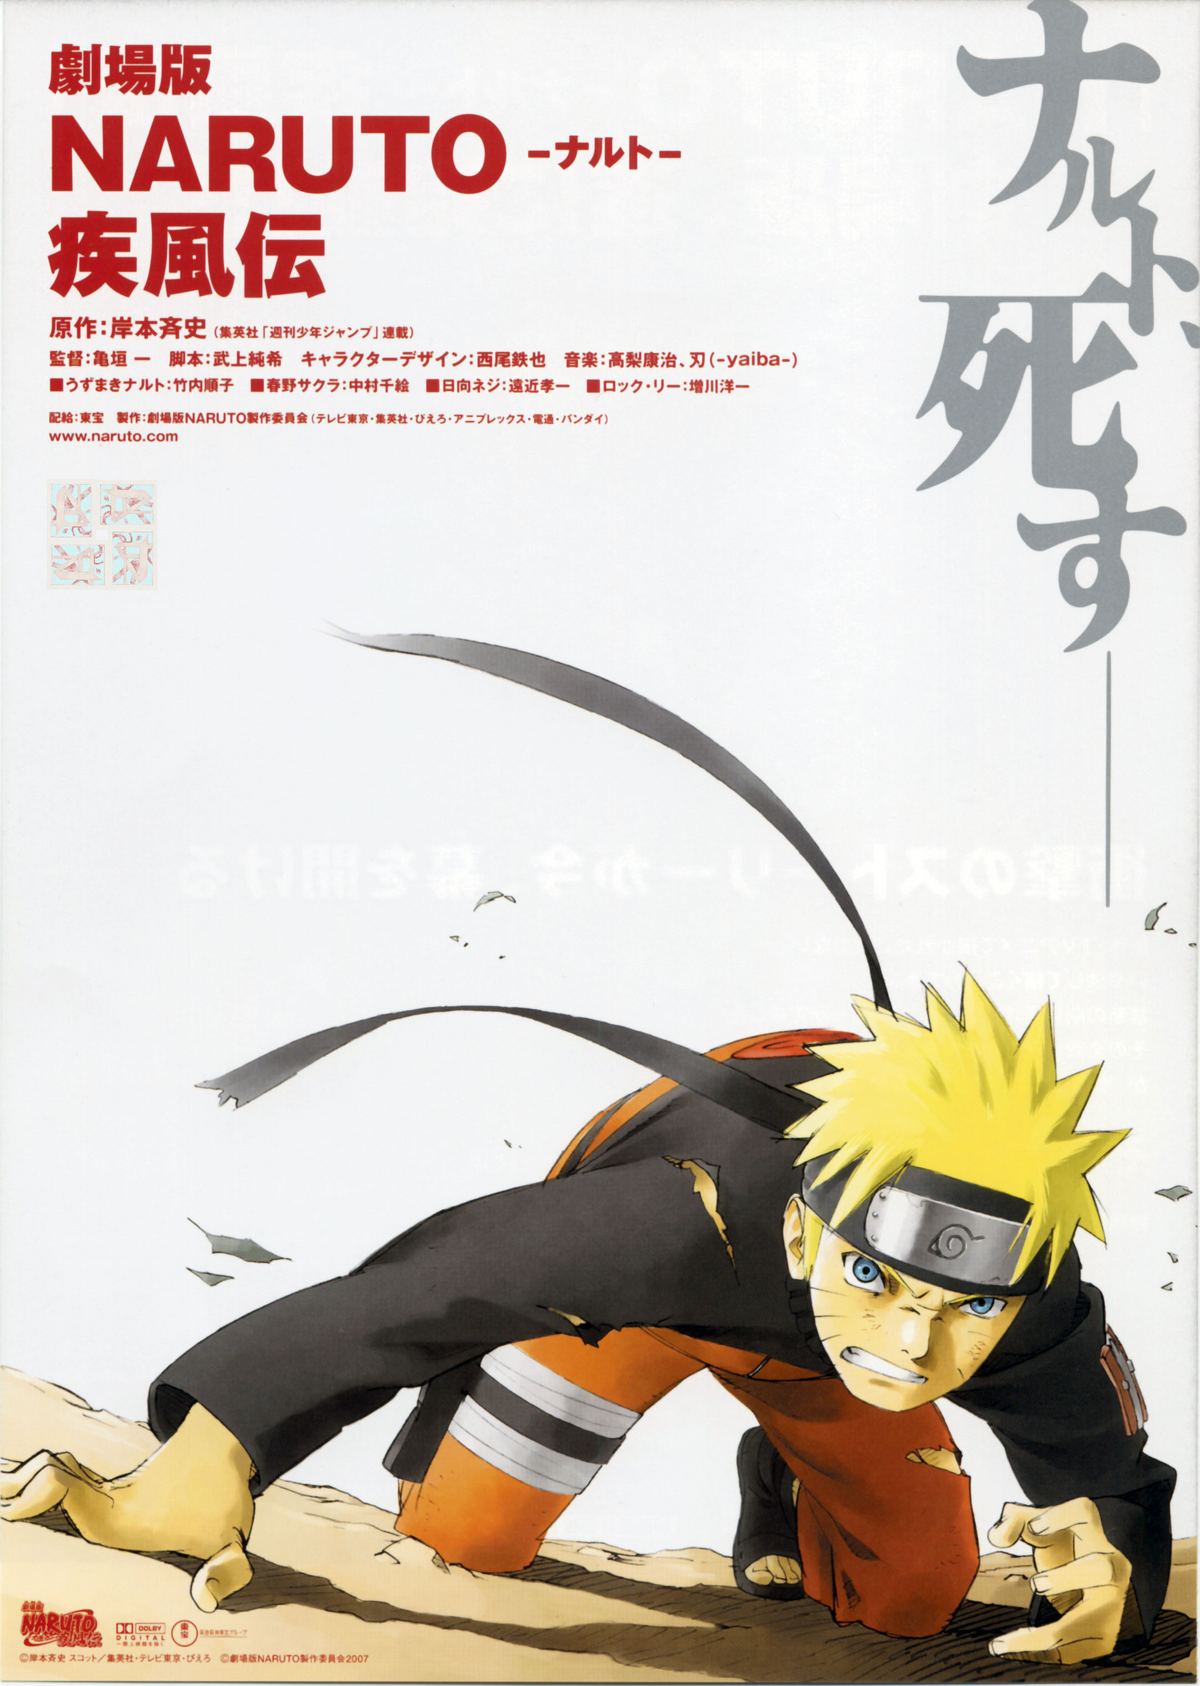 Prologue of Road to Ninja, Narutopedia